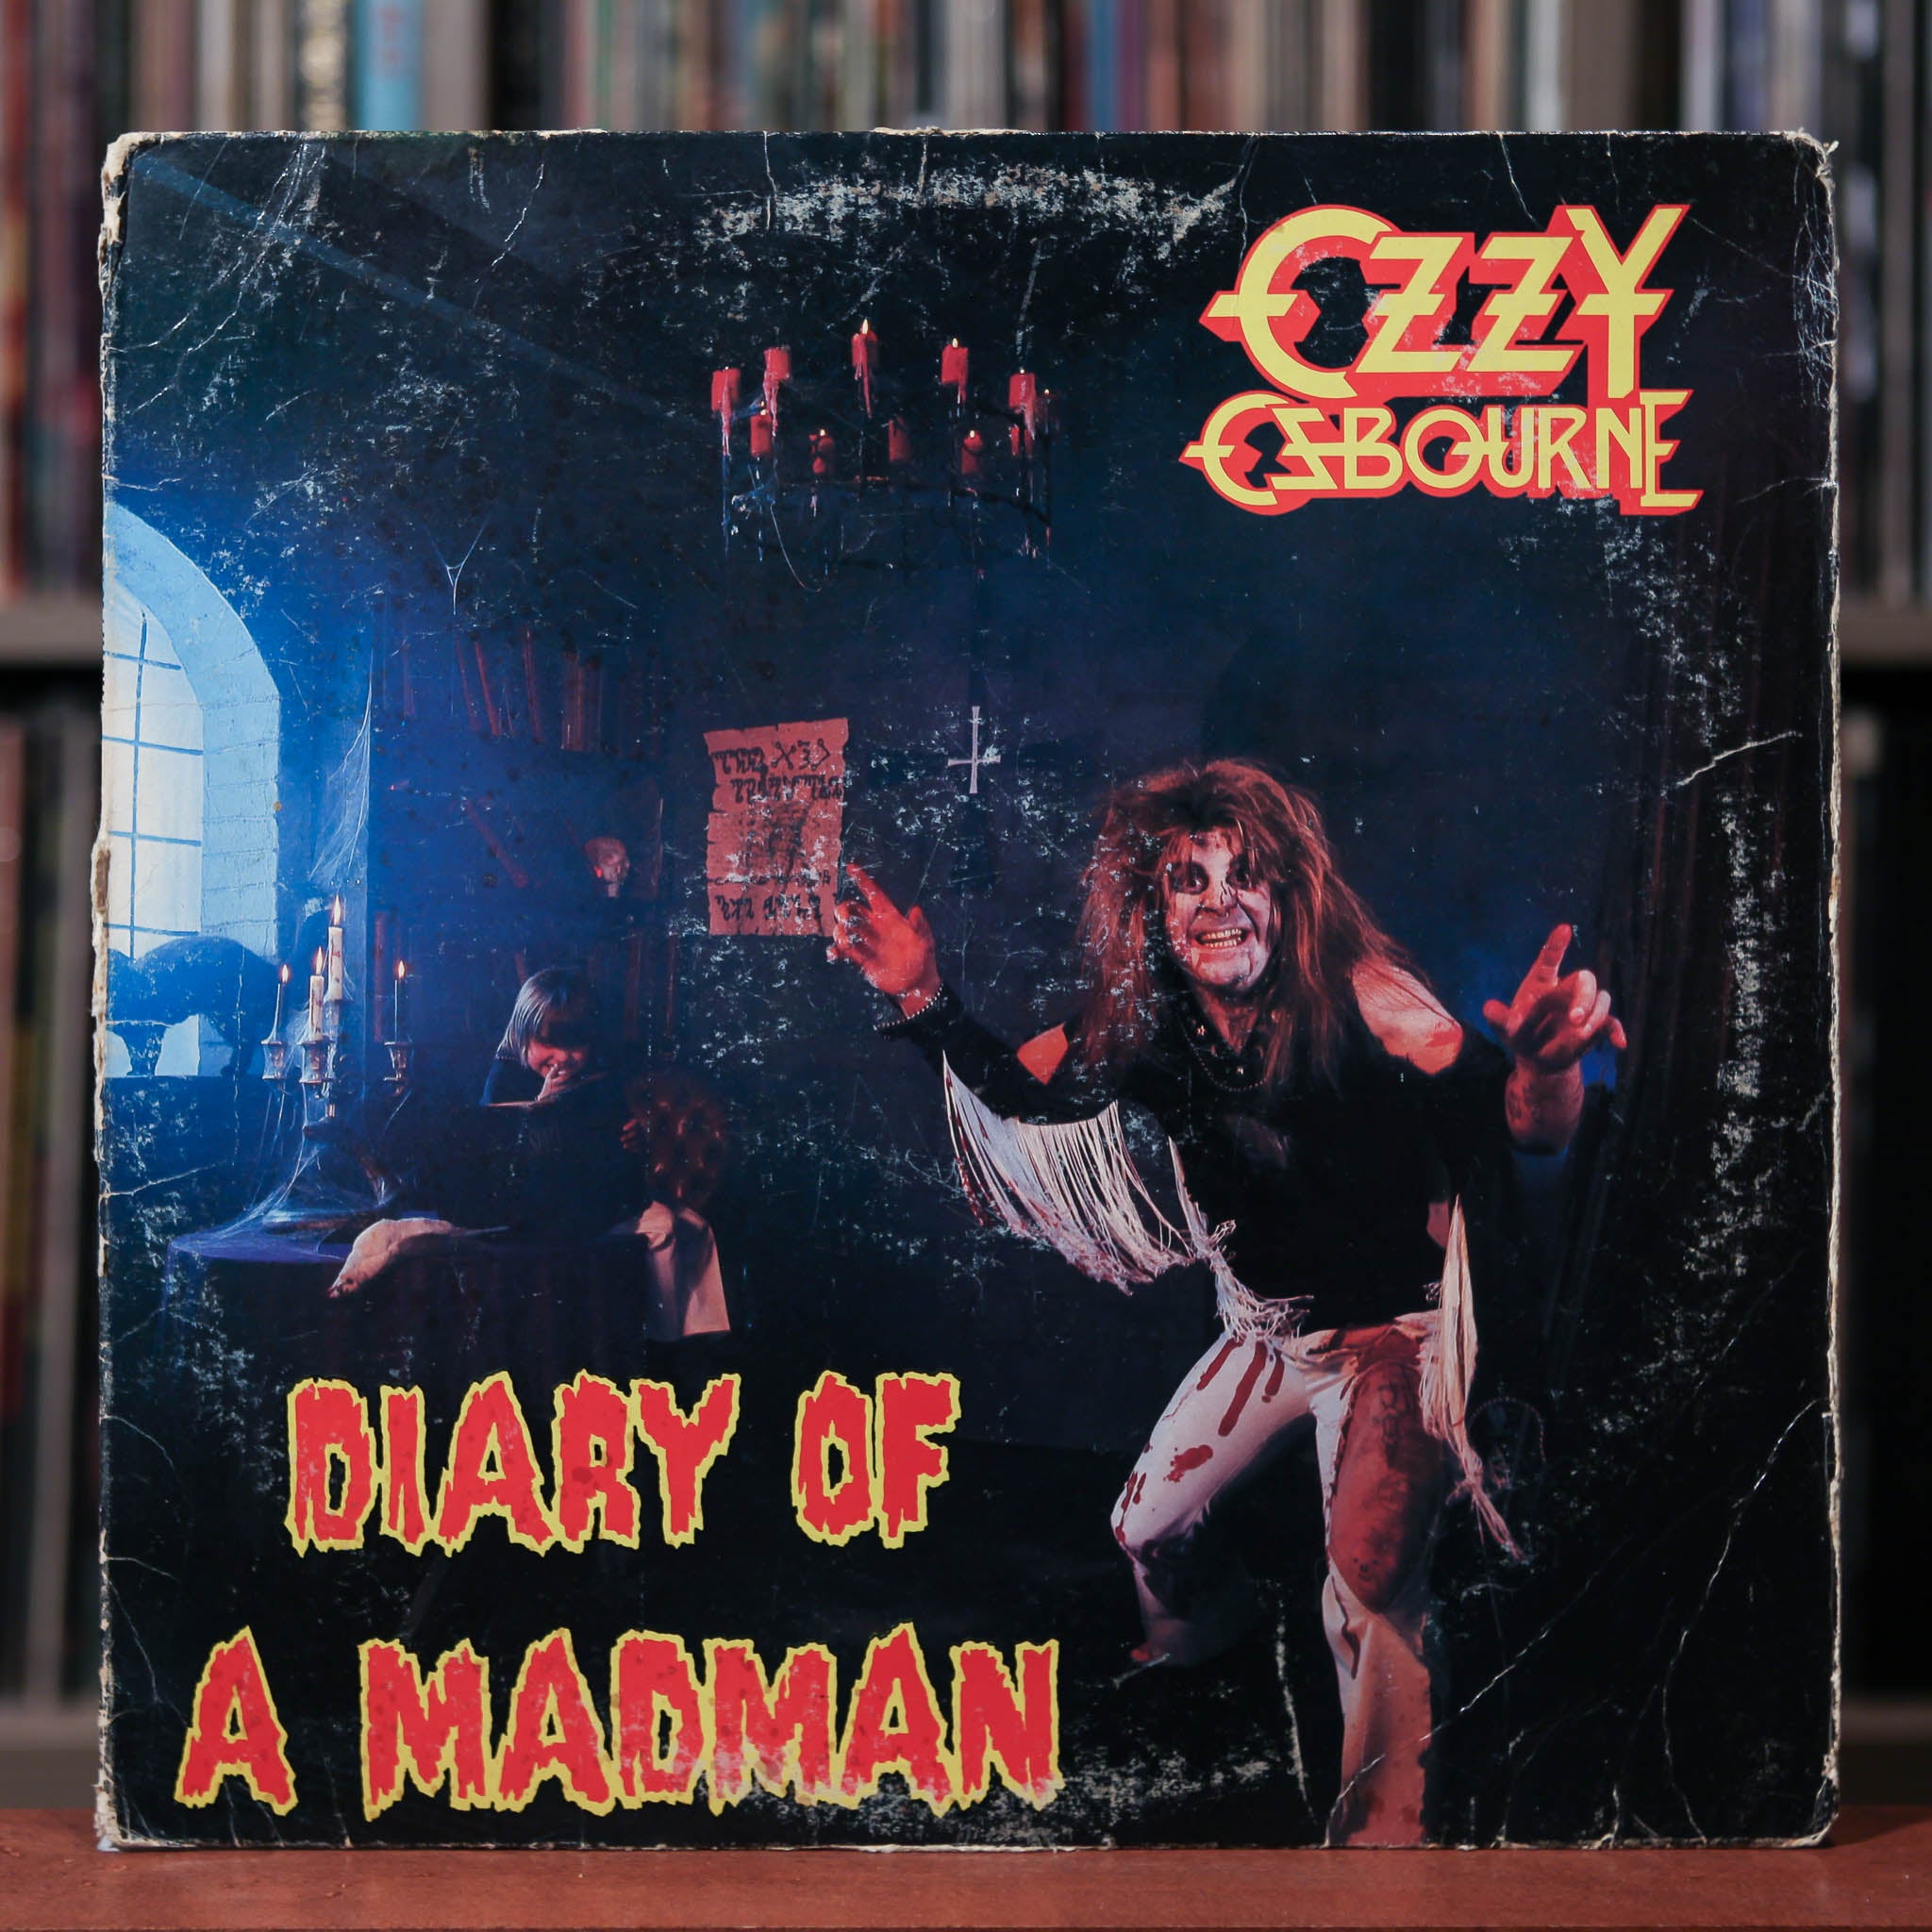 Ozzy Osbourne - Diary of a Madman - 1981 Jet